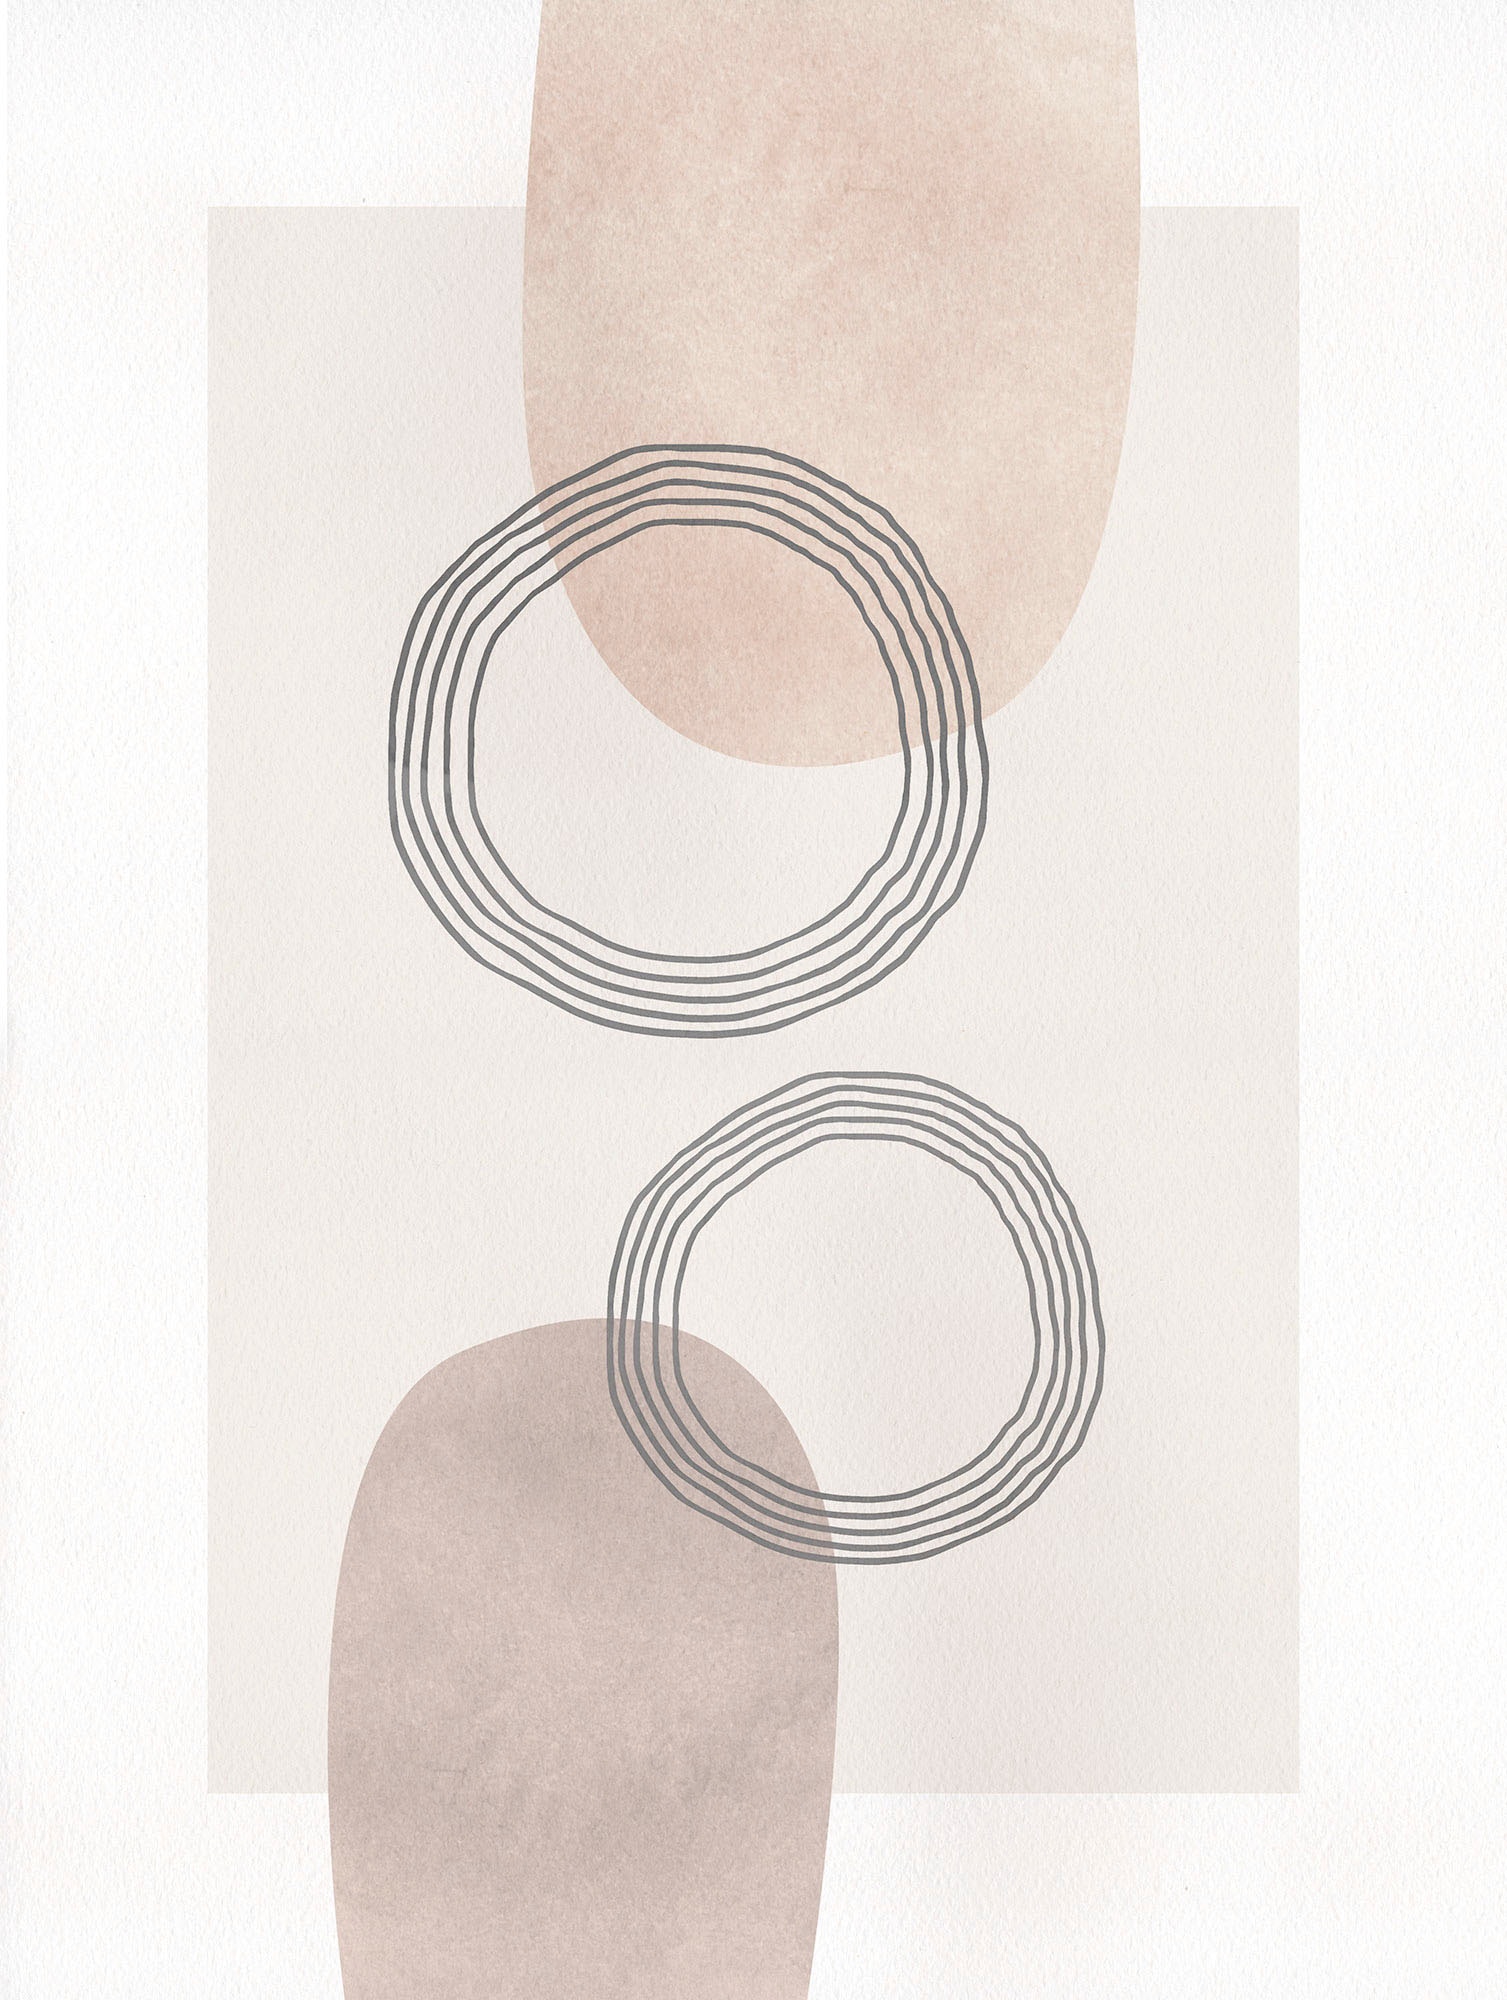 Komar Wandbild »Line Art Circles«, (1 St.), Deutsches Premium-Poster Fotopapier mit seidenmatter Oberfläche und hoher Lichtbeständigkeit. Für fotorealistische Drucke mit gestochen scharfen Details und hervorragender Farbbrillanz. von Komar